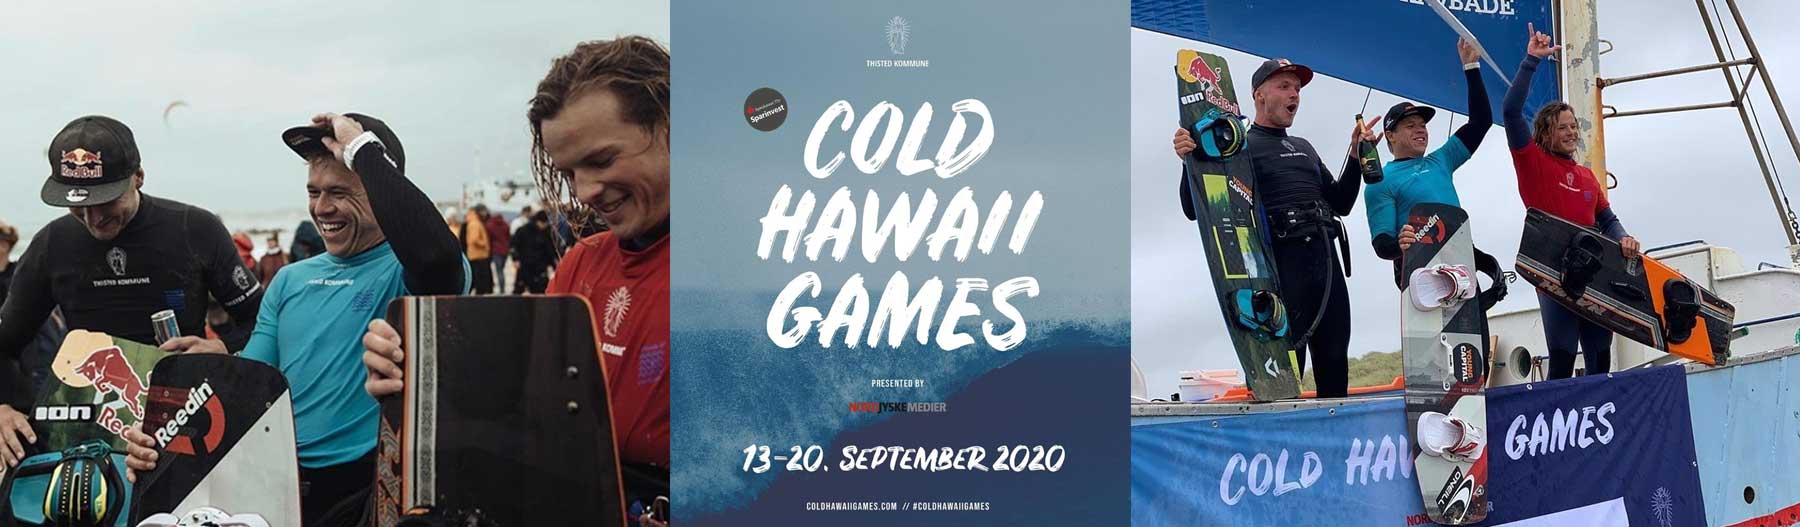 Cold Hawaii Games Kitemana